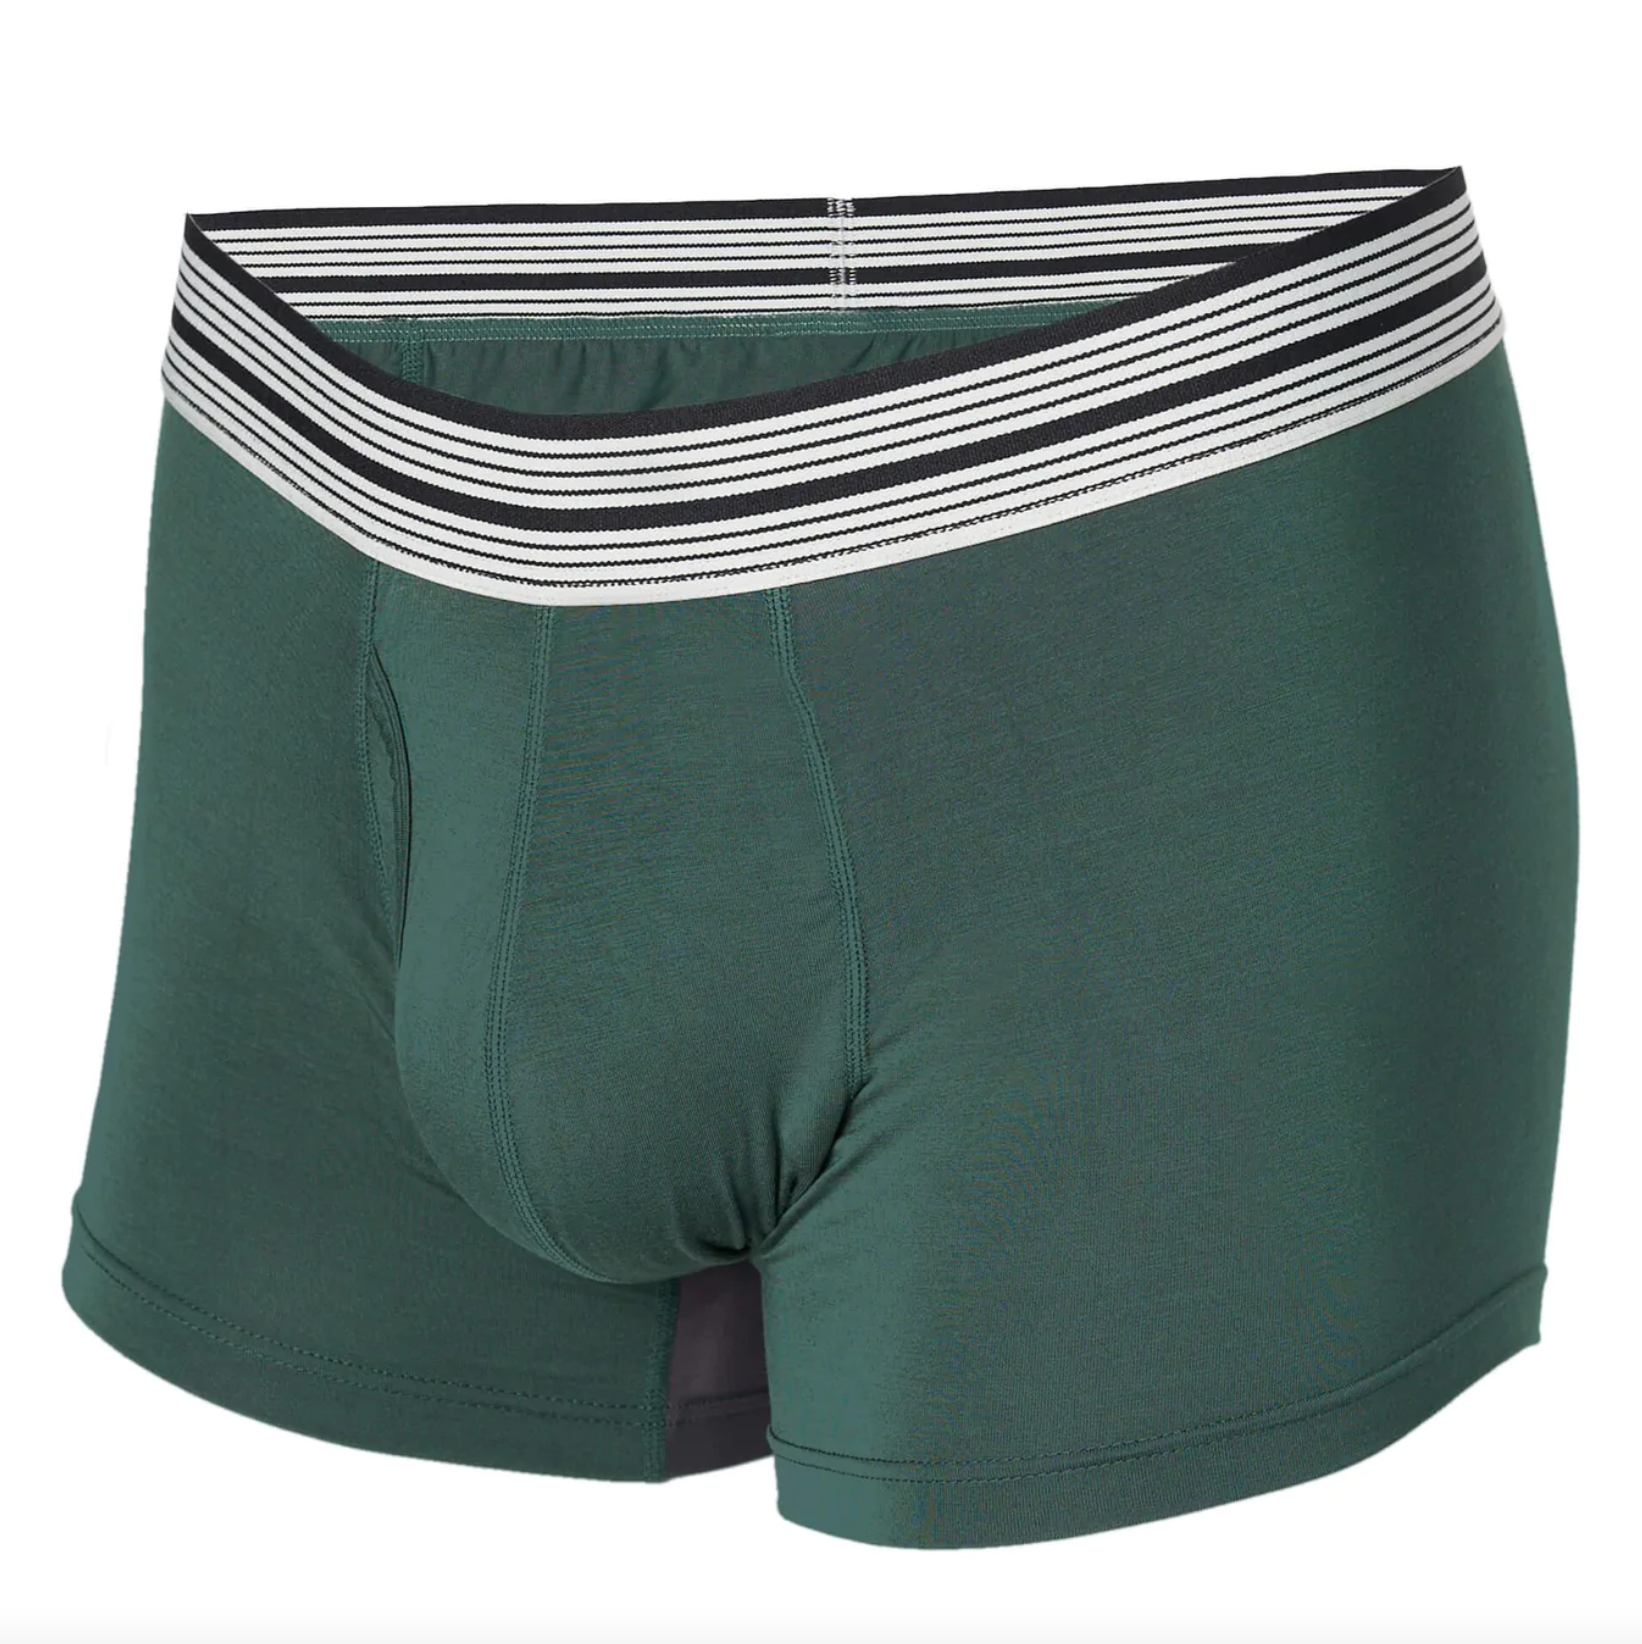 Mr. Davis - Standard Cut Underwear - Forest Bamboo